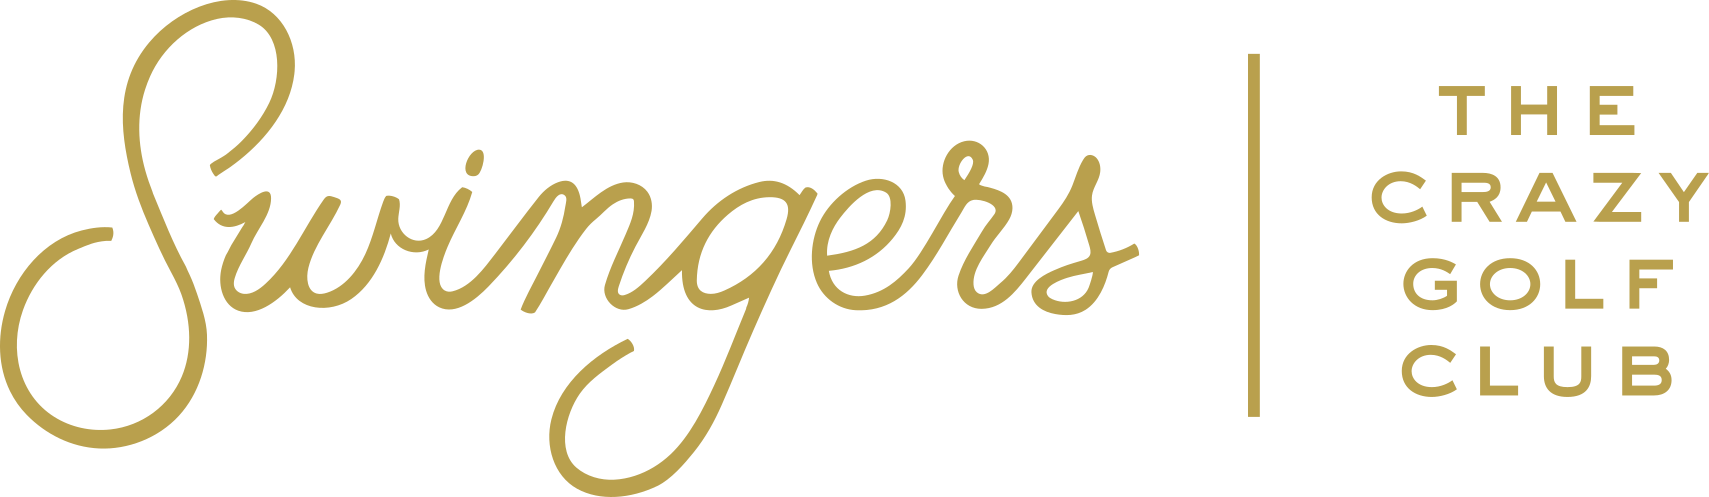 Swingers Golf Club - Logo.png